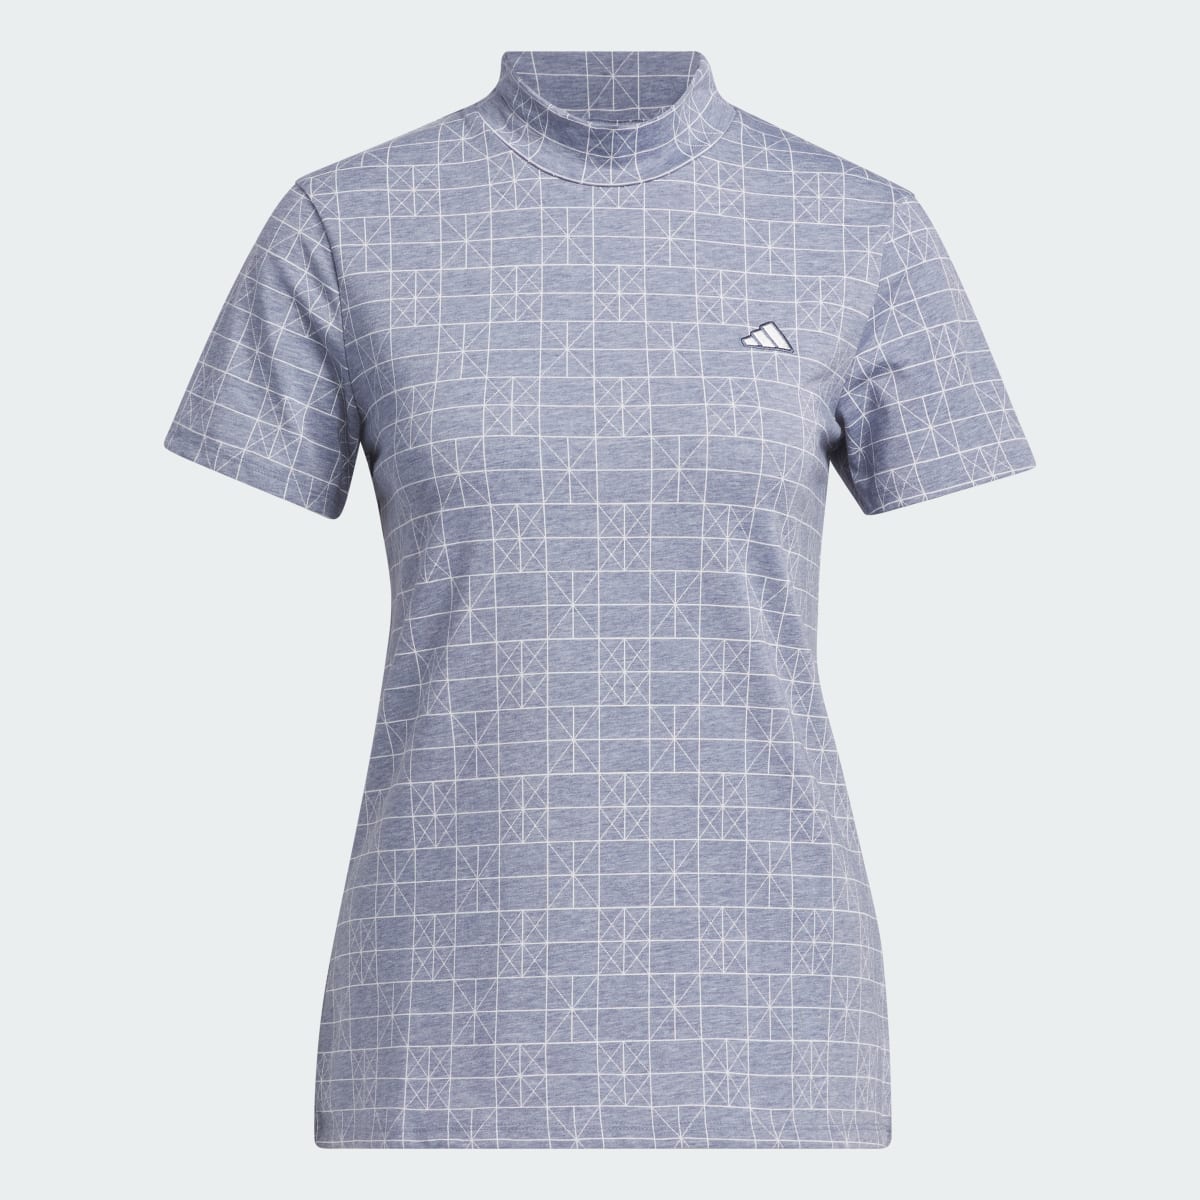 Adidas Go-To Printed Polo Shirt. 5